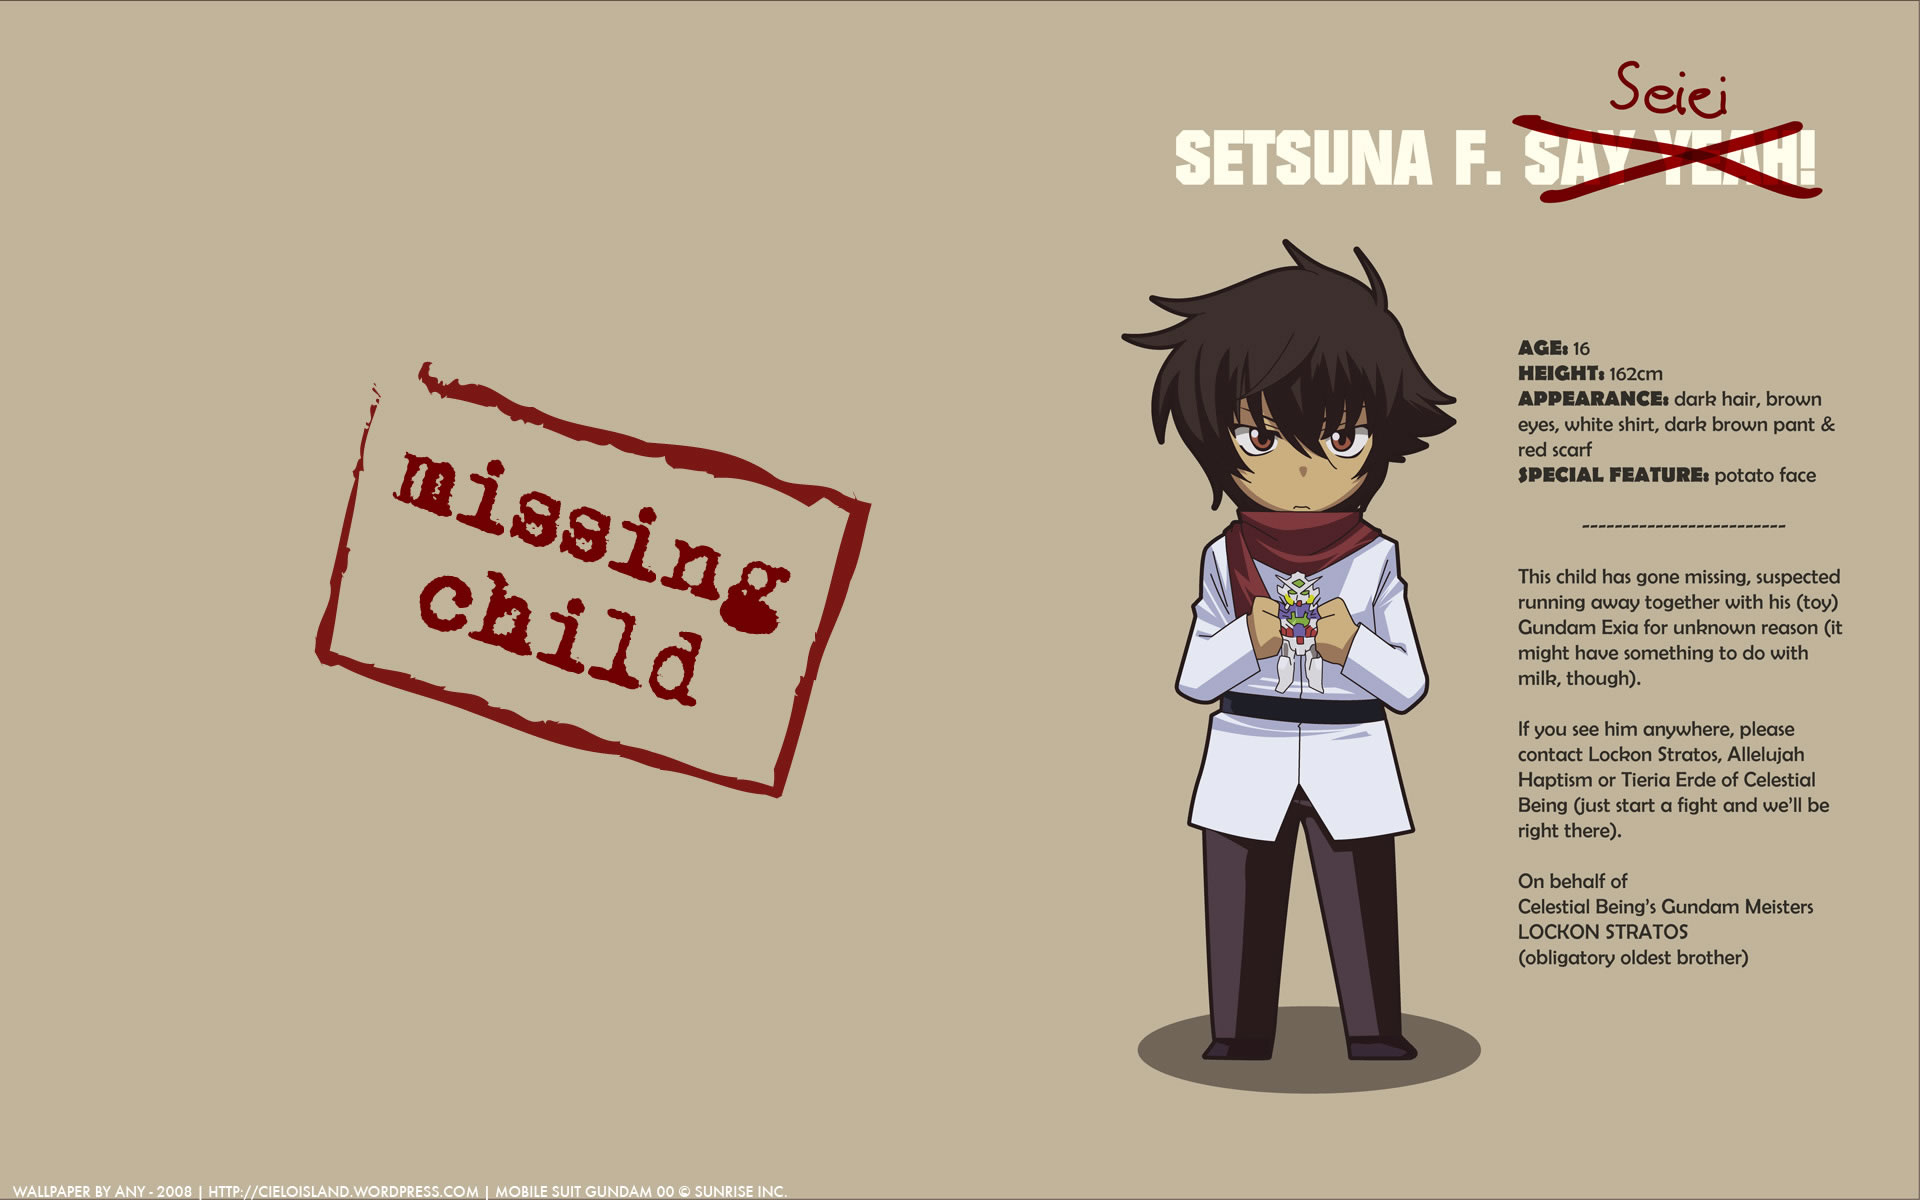 Missing Child - Setsuna F Seiei Quote - HD Wallpaper 